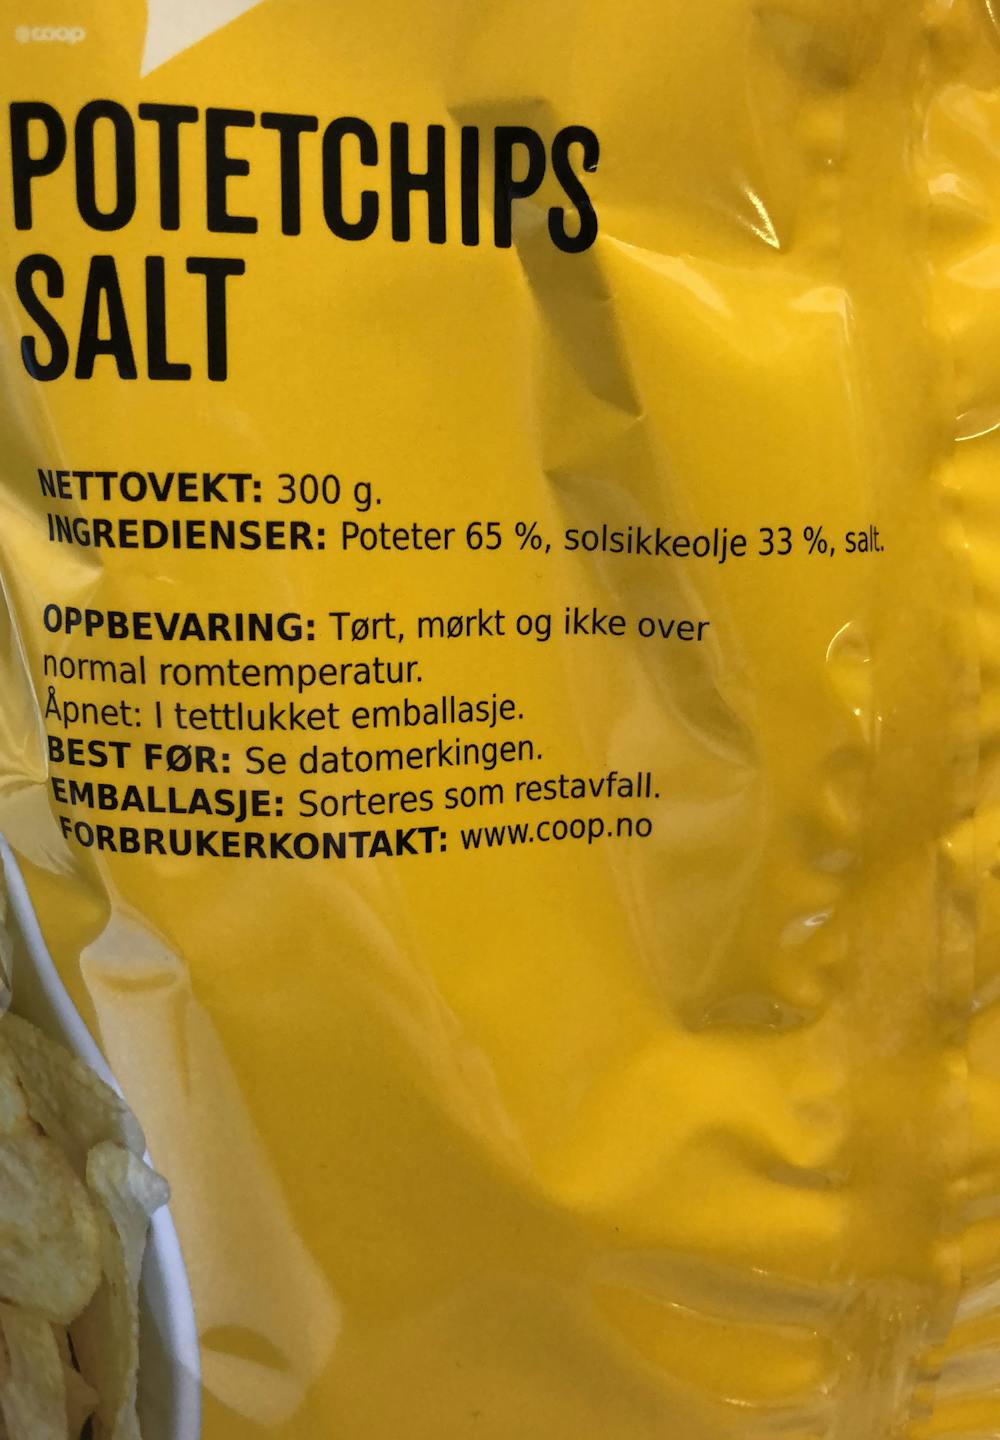 Ingredienslisten til Xtra Potetchips salt